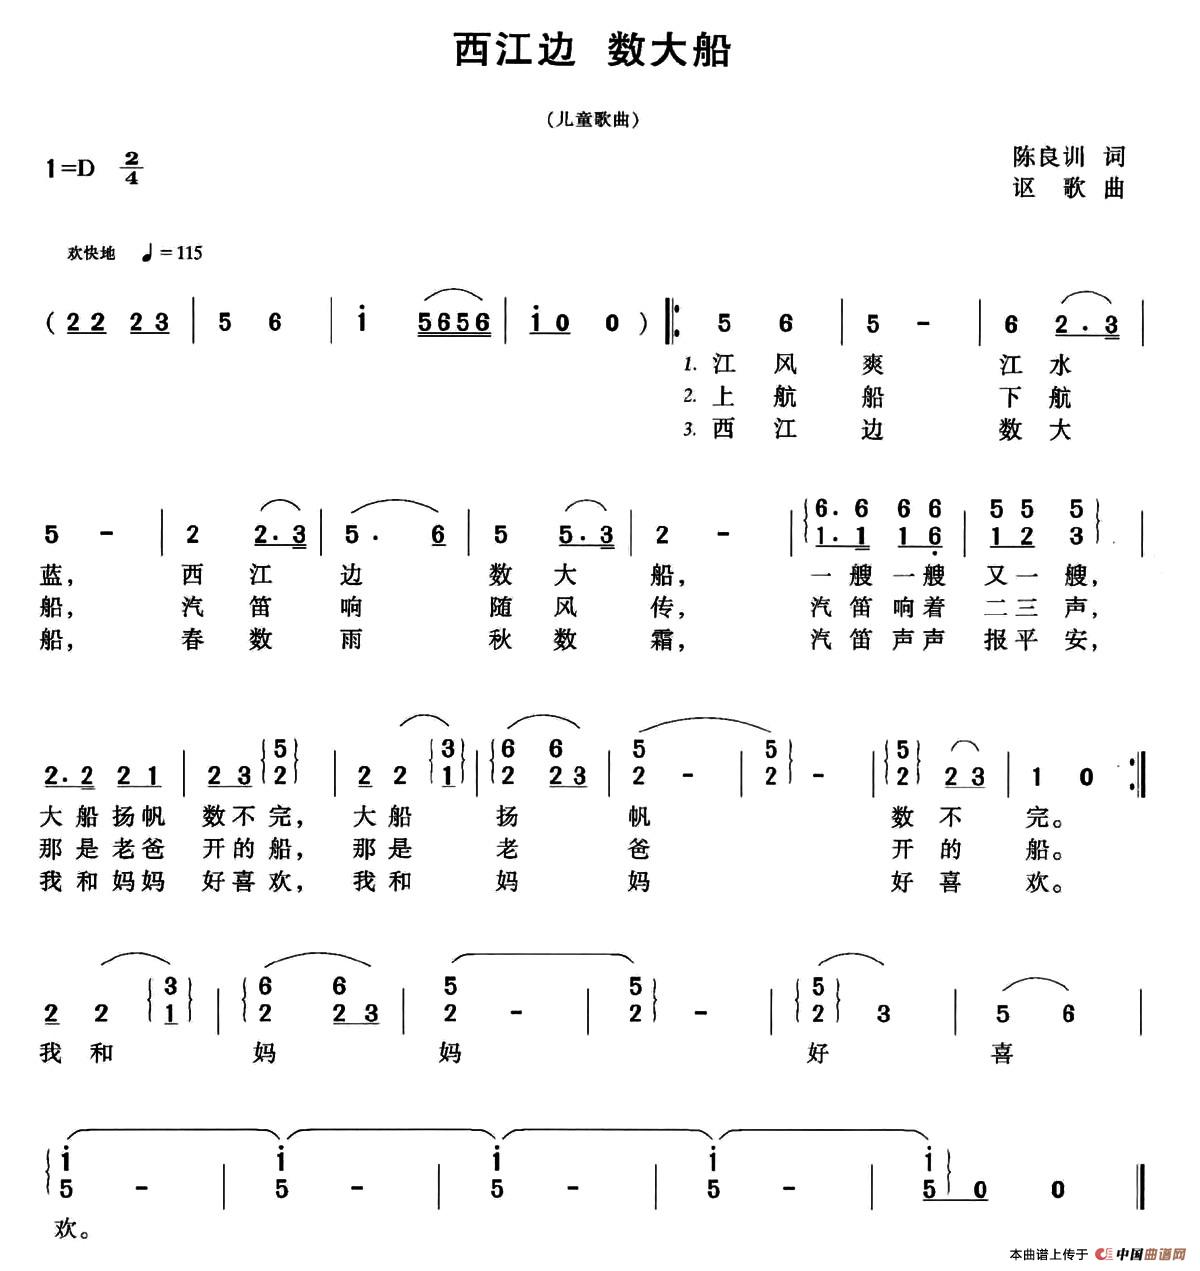 西江边 数大船(1)_001 (77).jpg